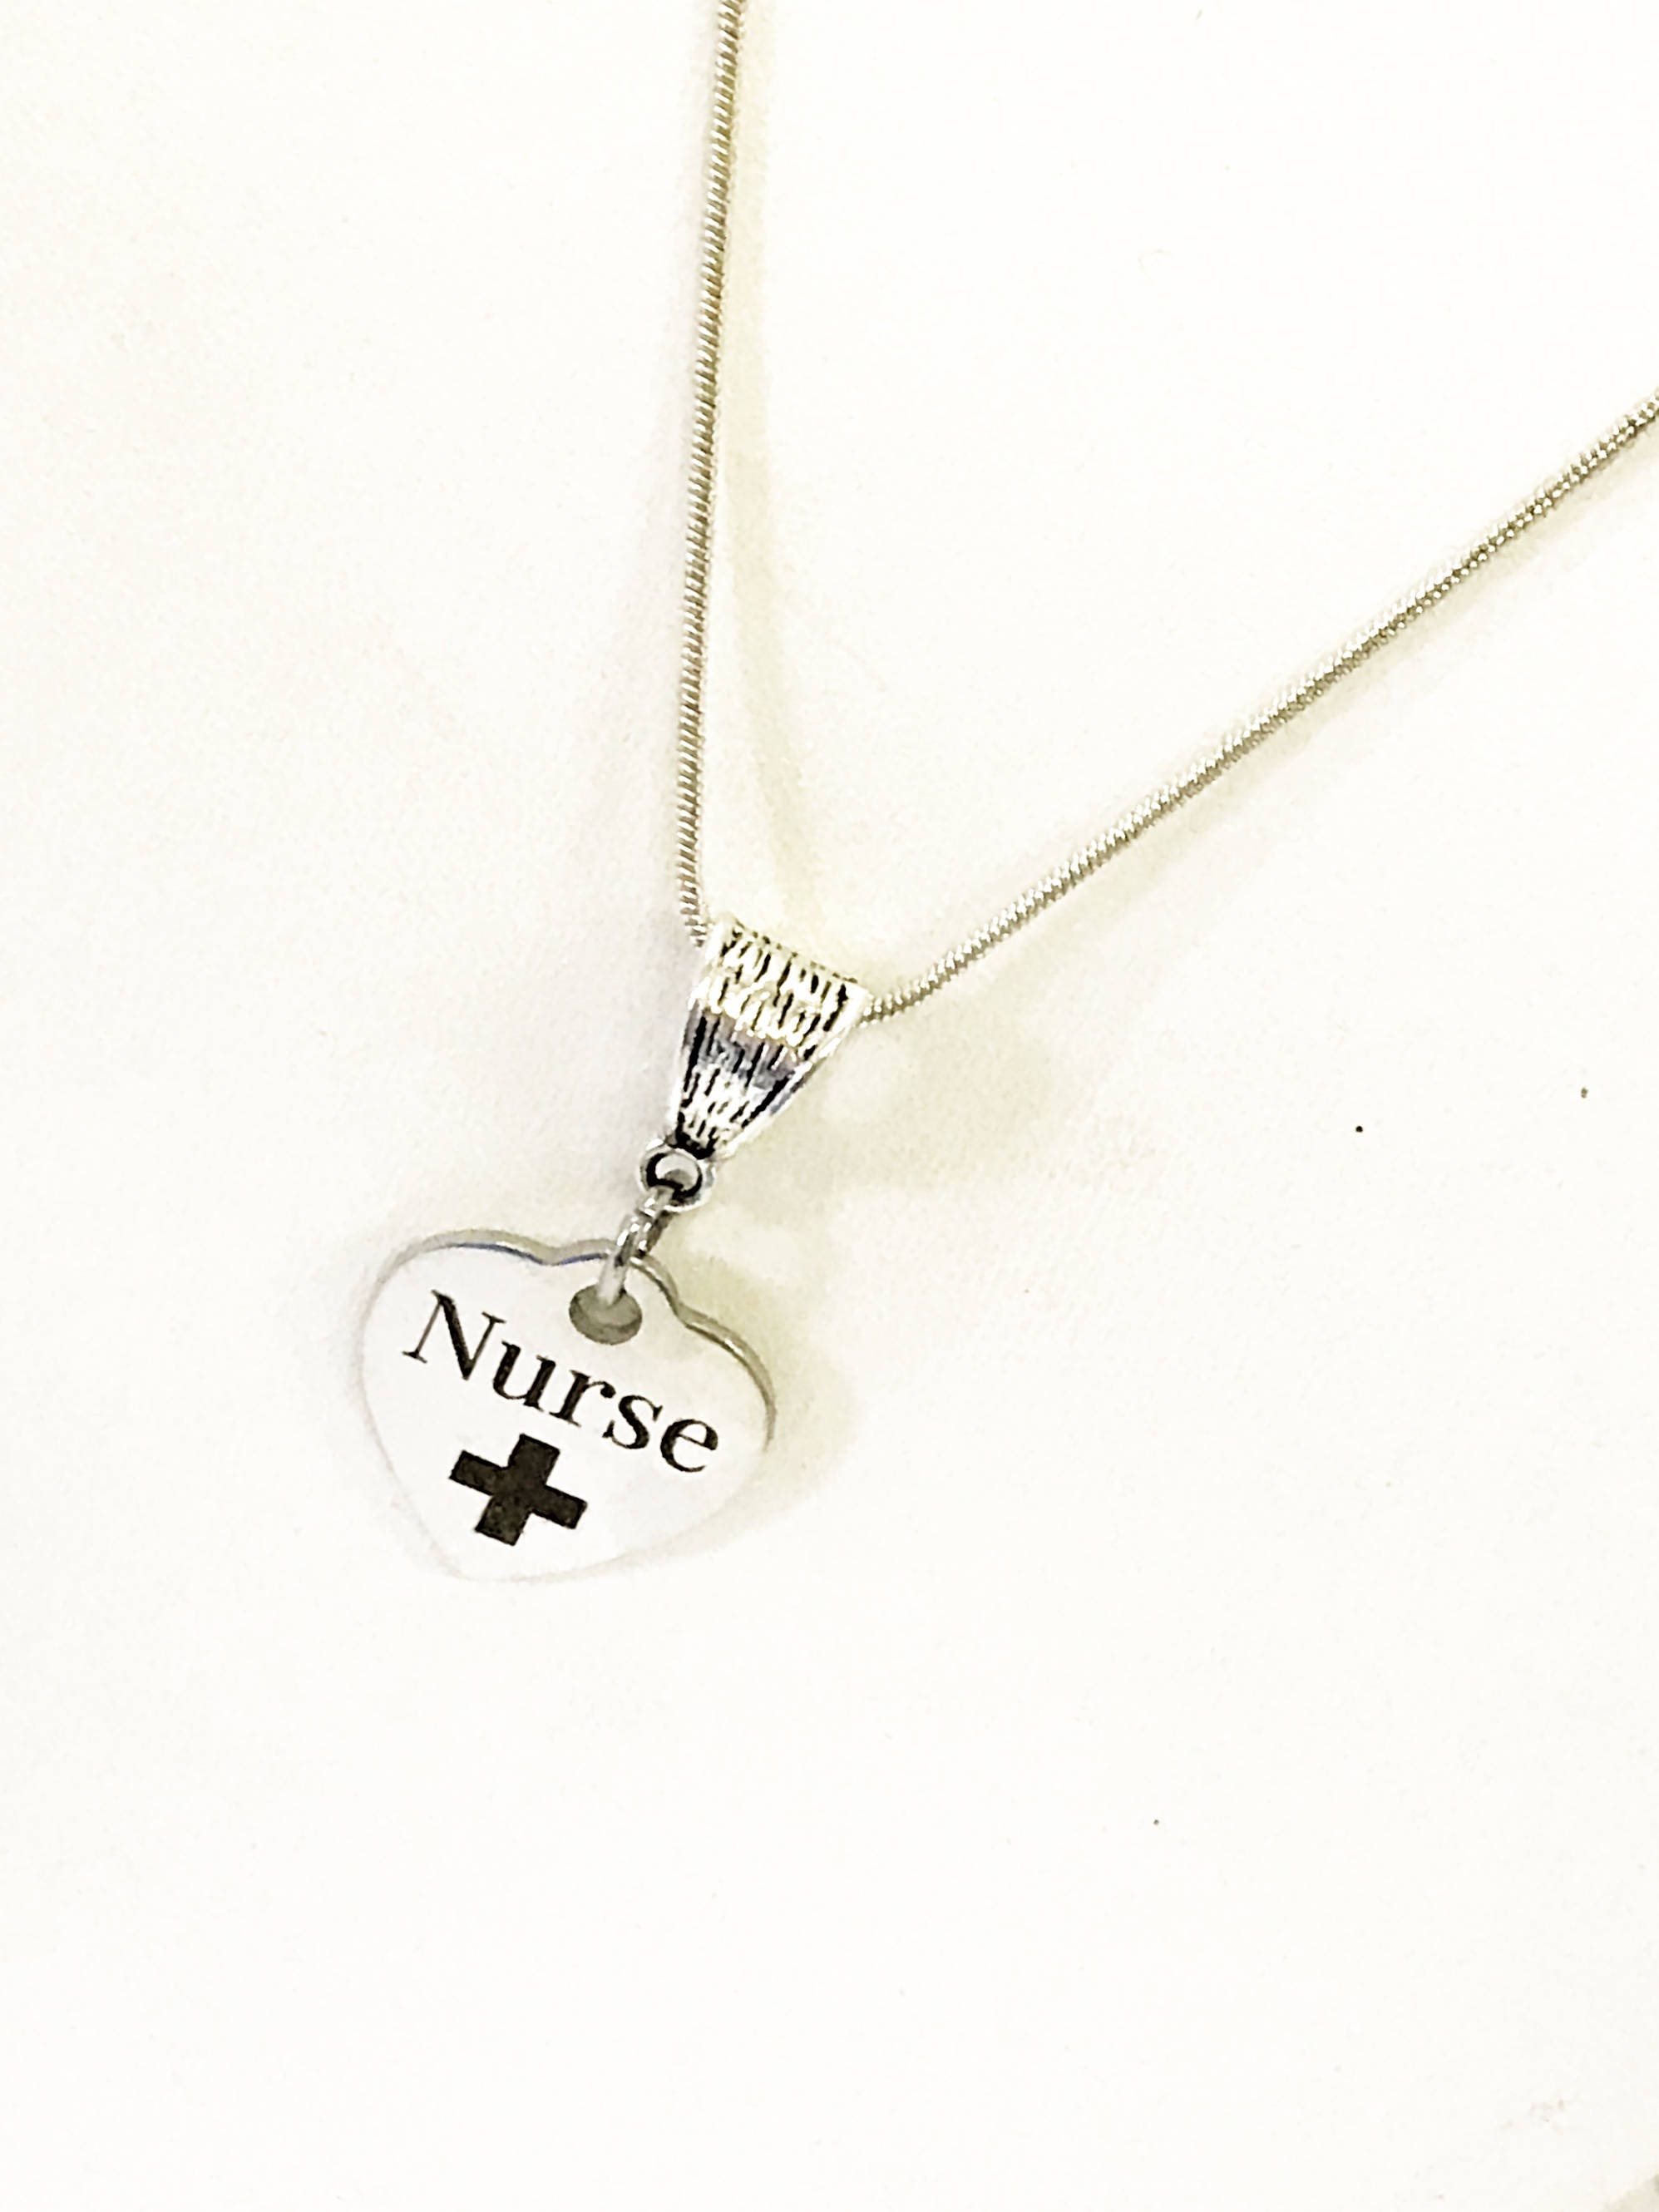 Nurse Necklace Nurse Gifts Nurse Jewelry New Nurse Gift picture